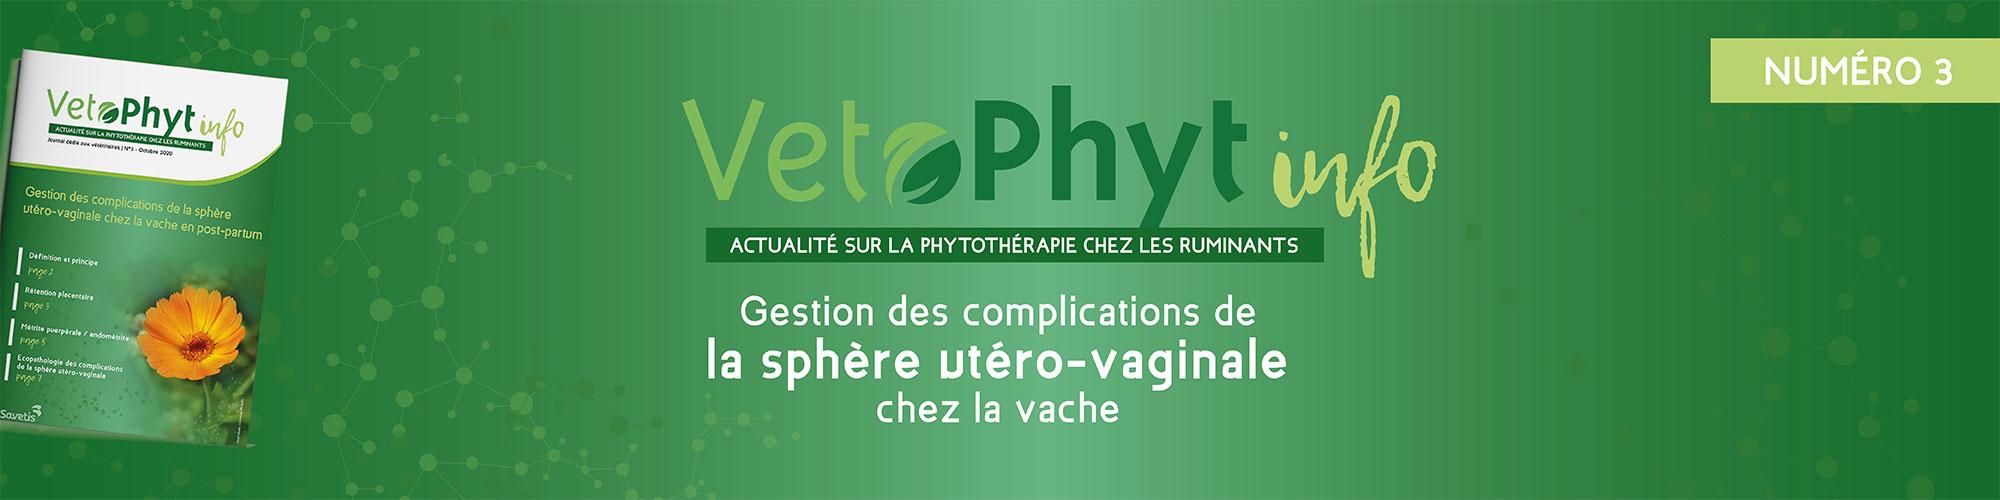 VetoPhyt info n°3